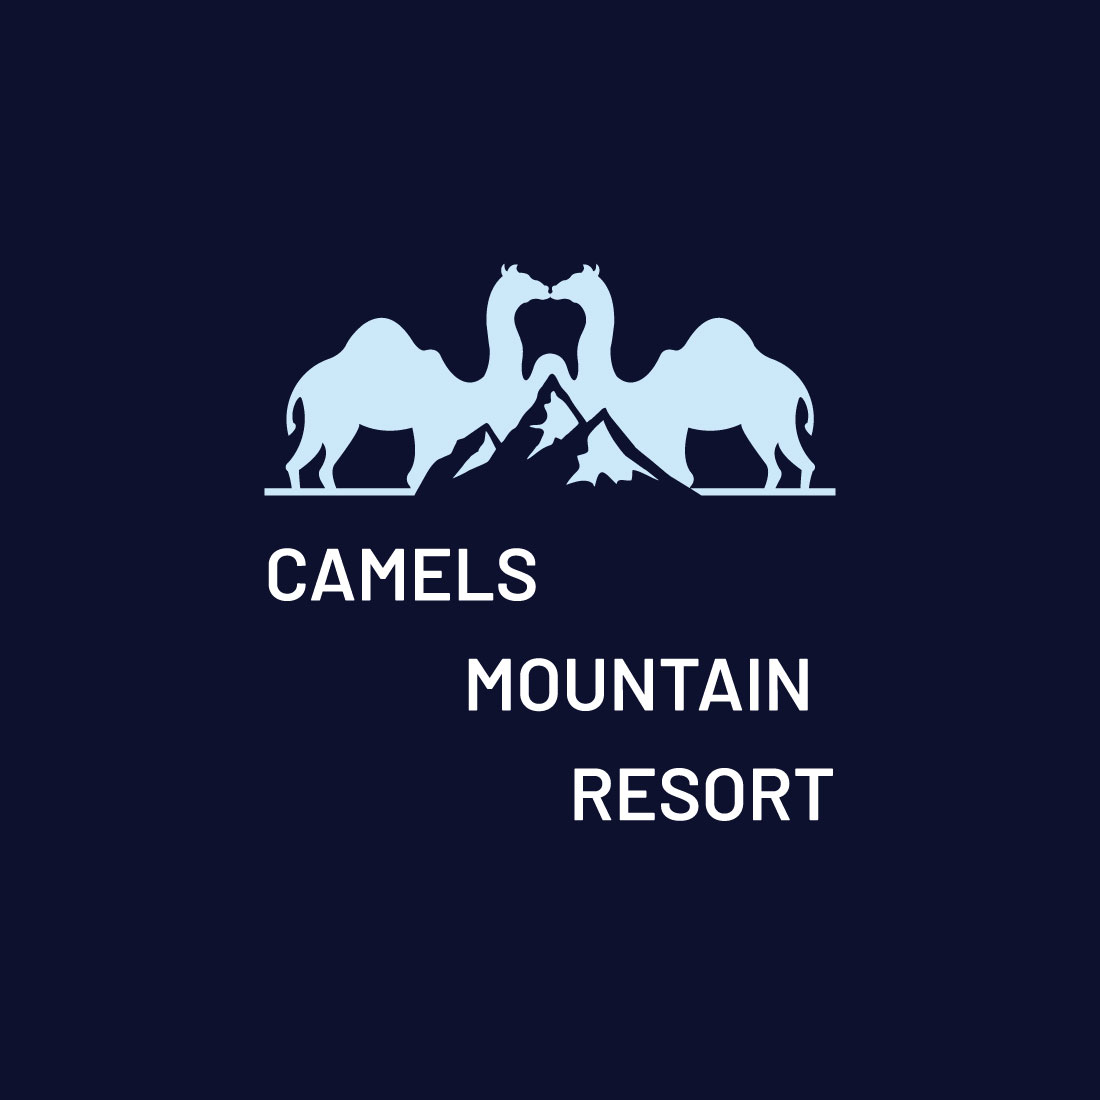 Camel Mountain Logo cover image.